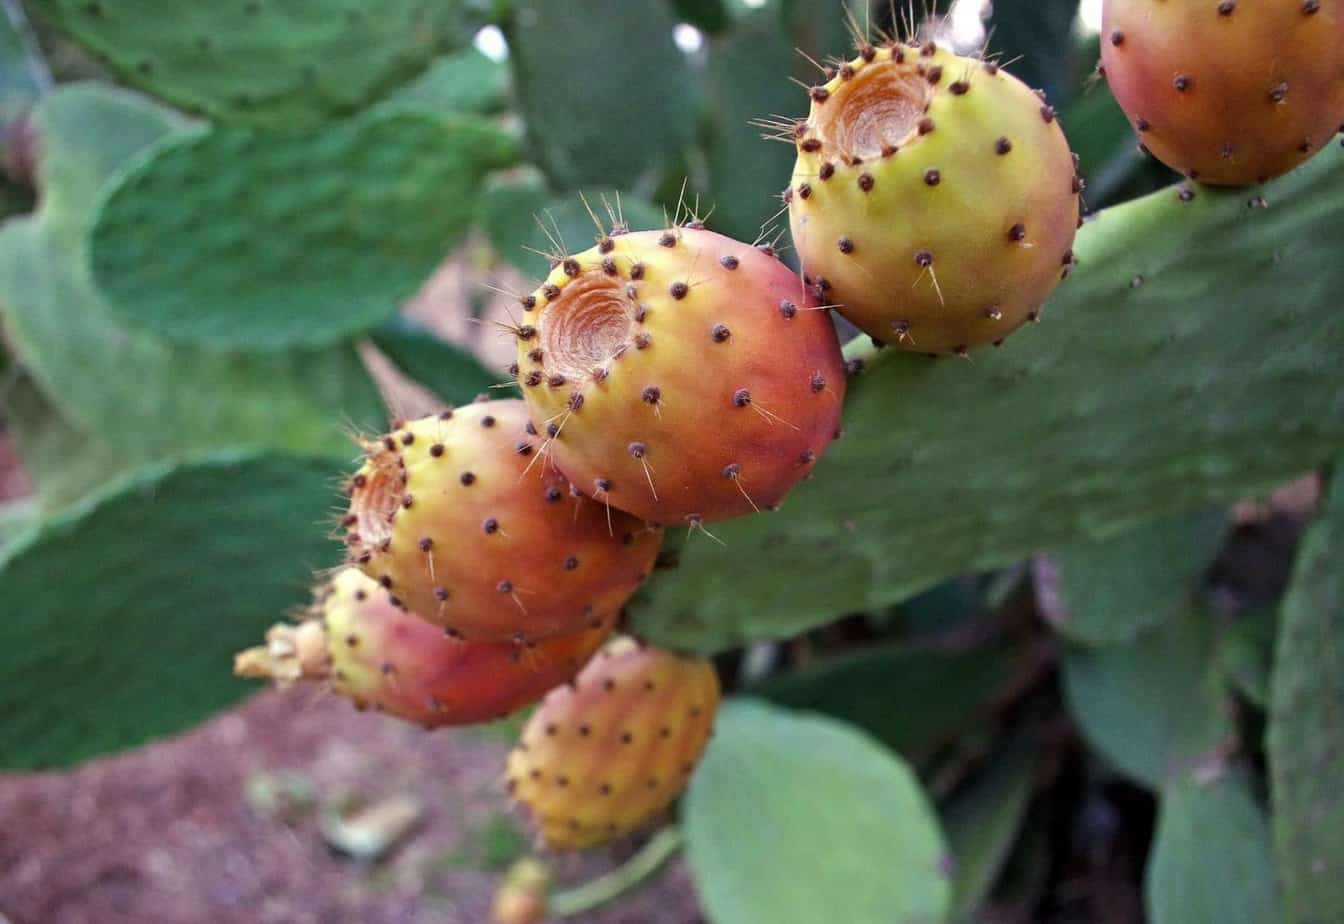 Съедобные плоды кактуса с названием и описанием